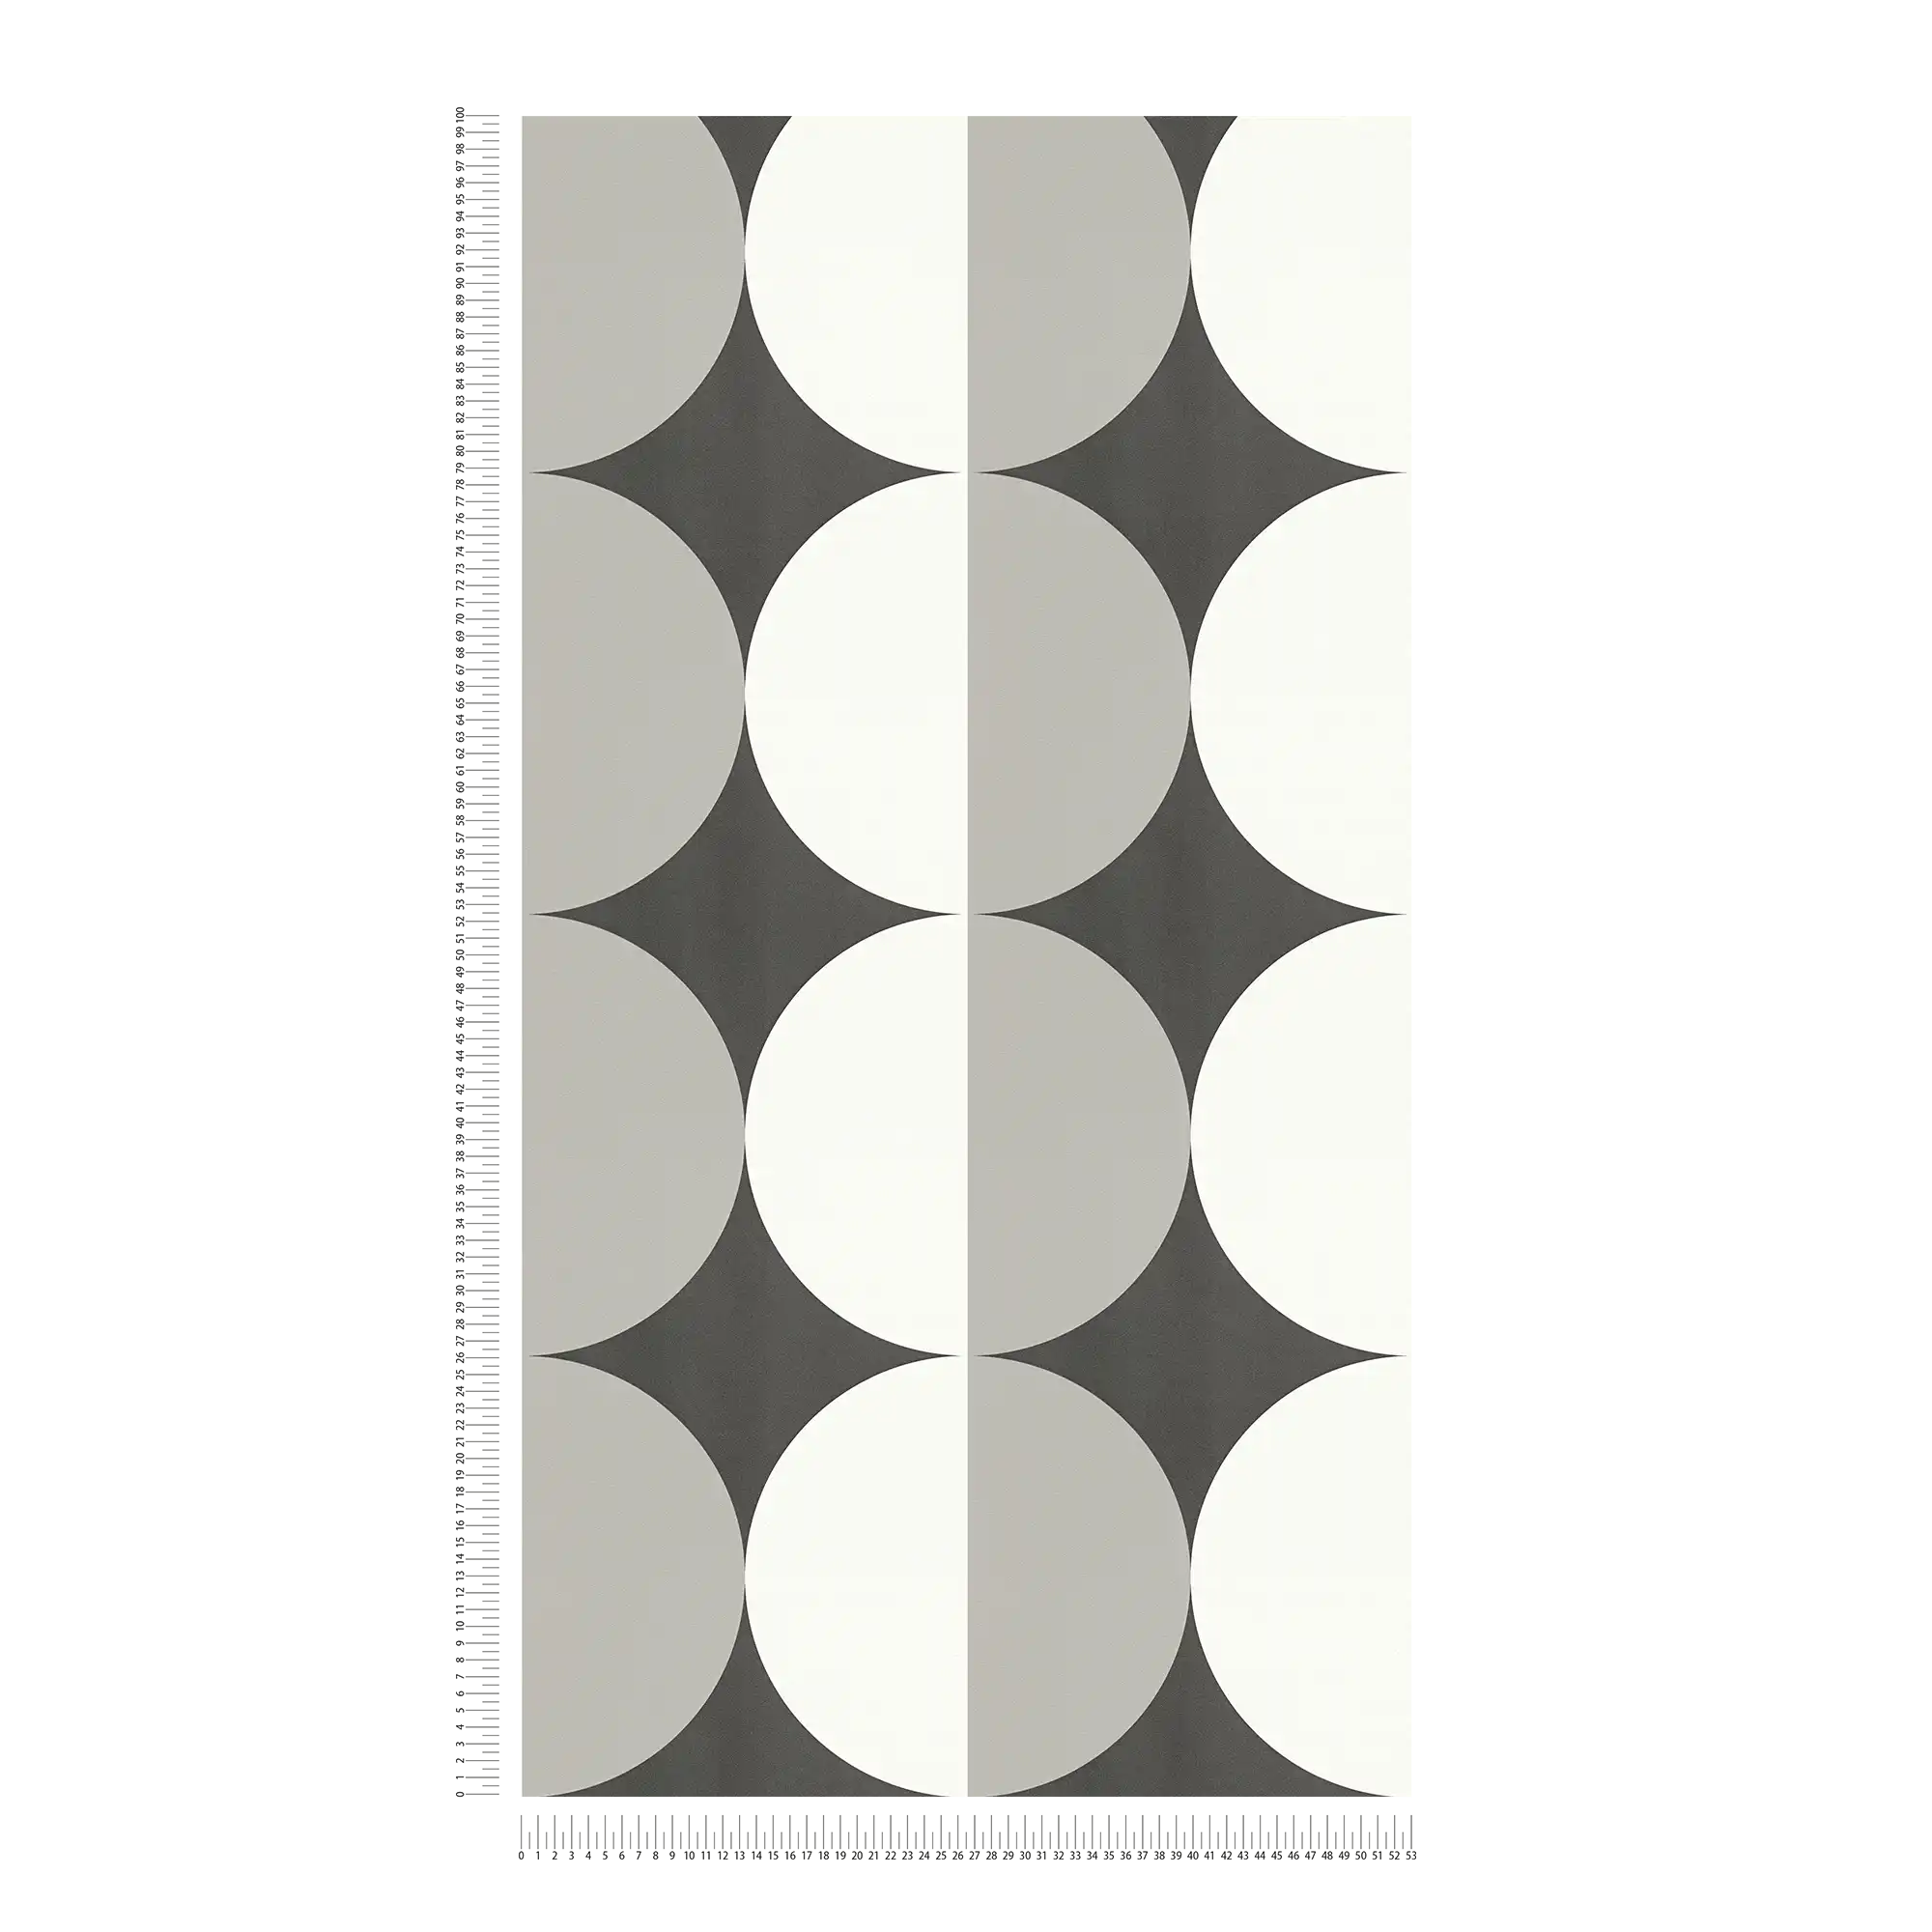             Papel pintado no tejido con motivos gráficos circulares - negro, blanco, gris
        